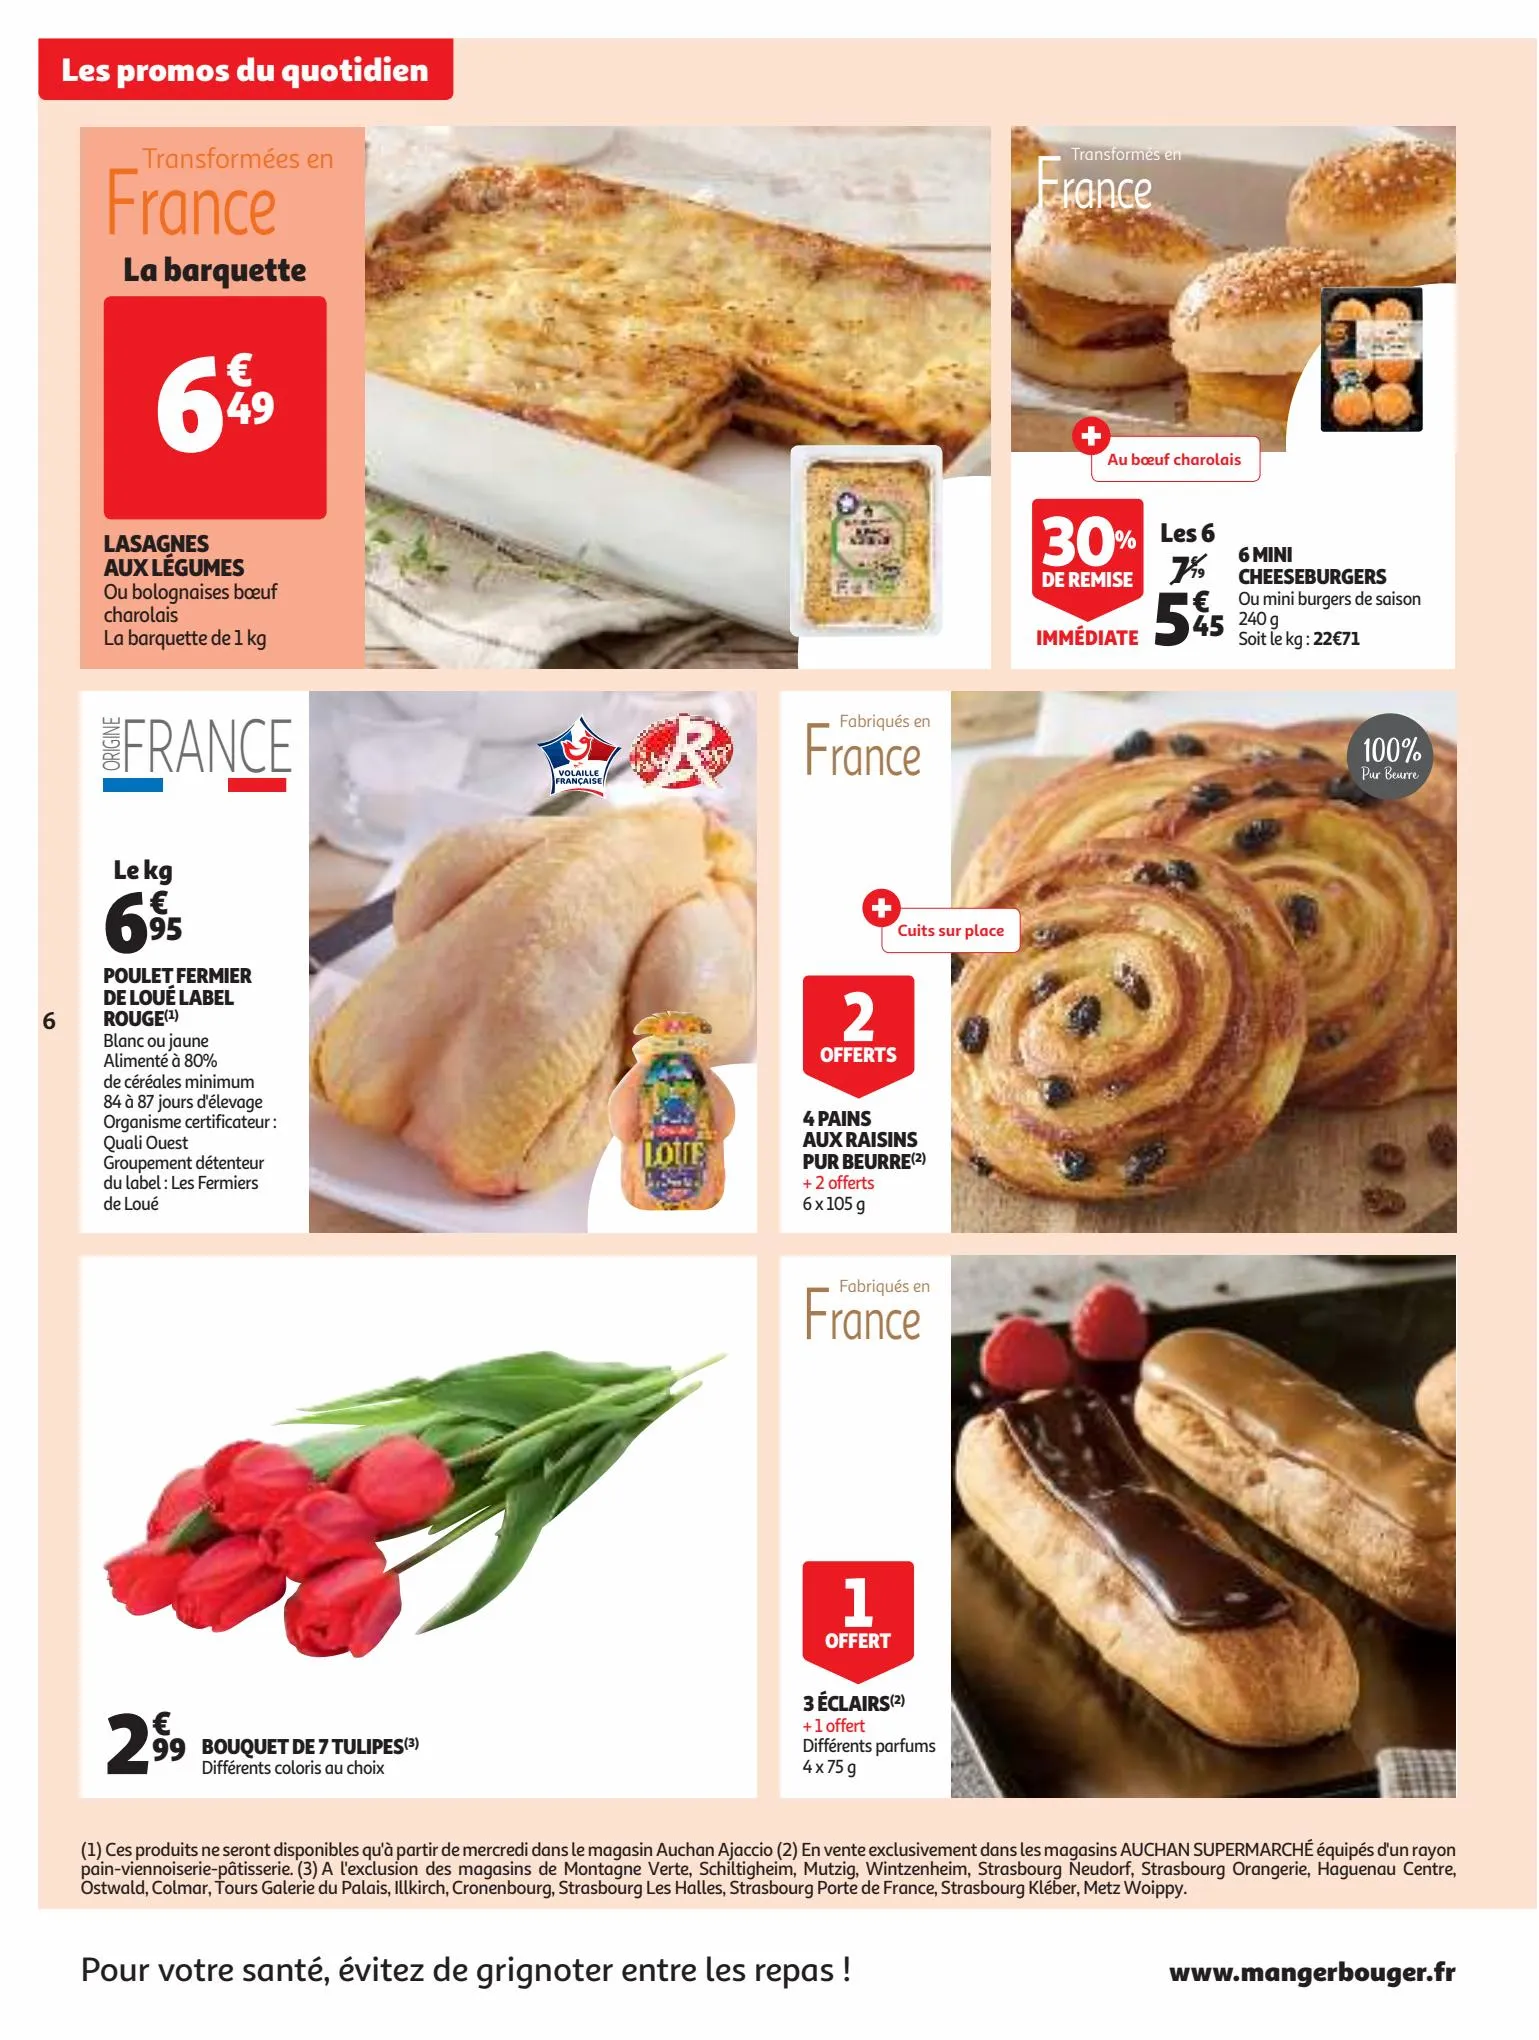 Catalogue Un grand choix de marques dans votre supermarché !, page 00006